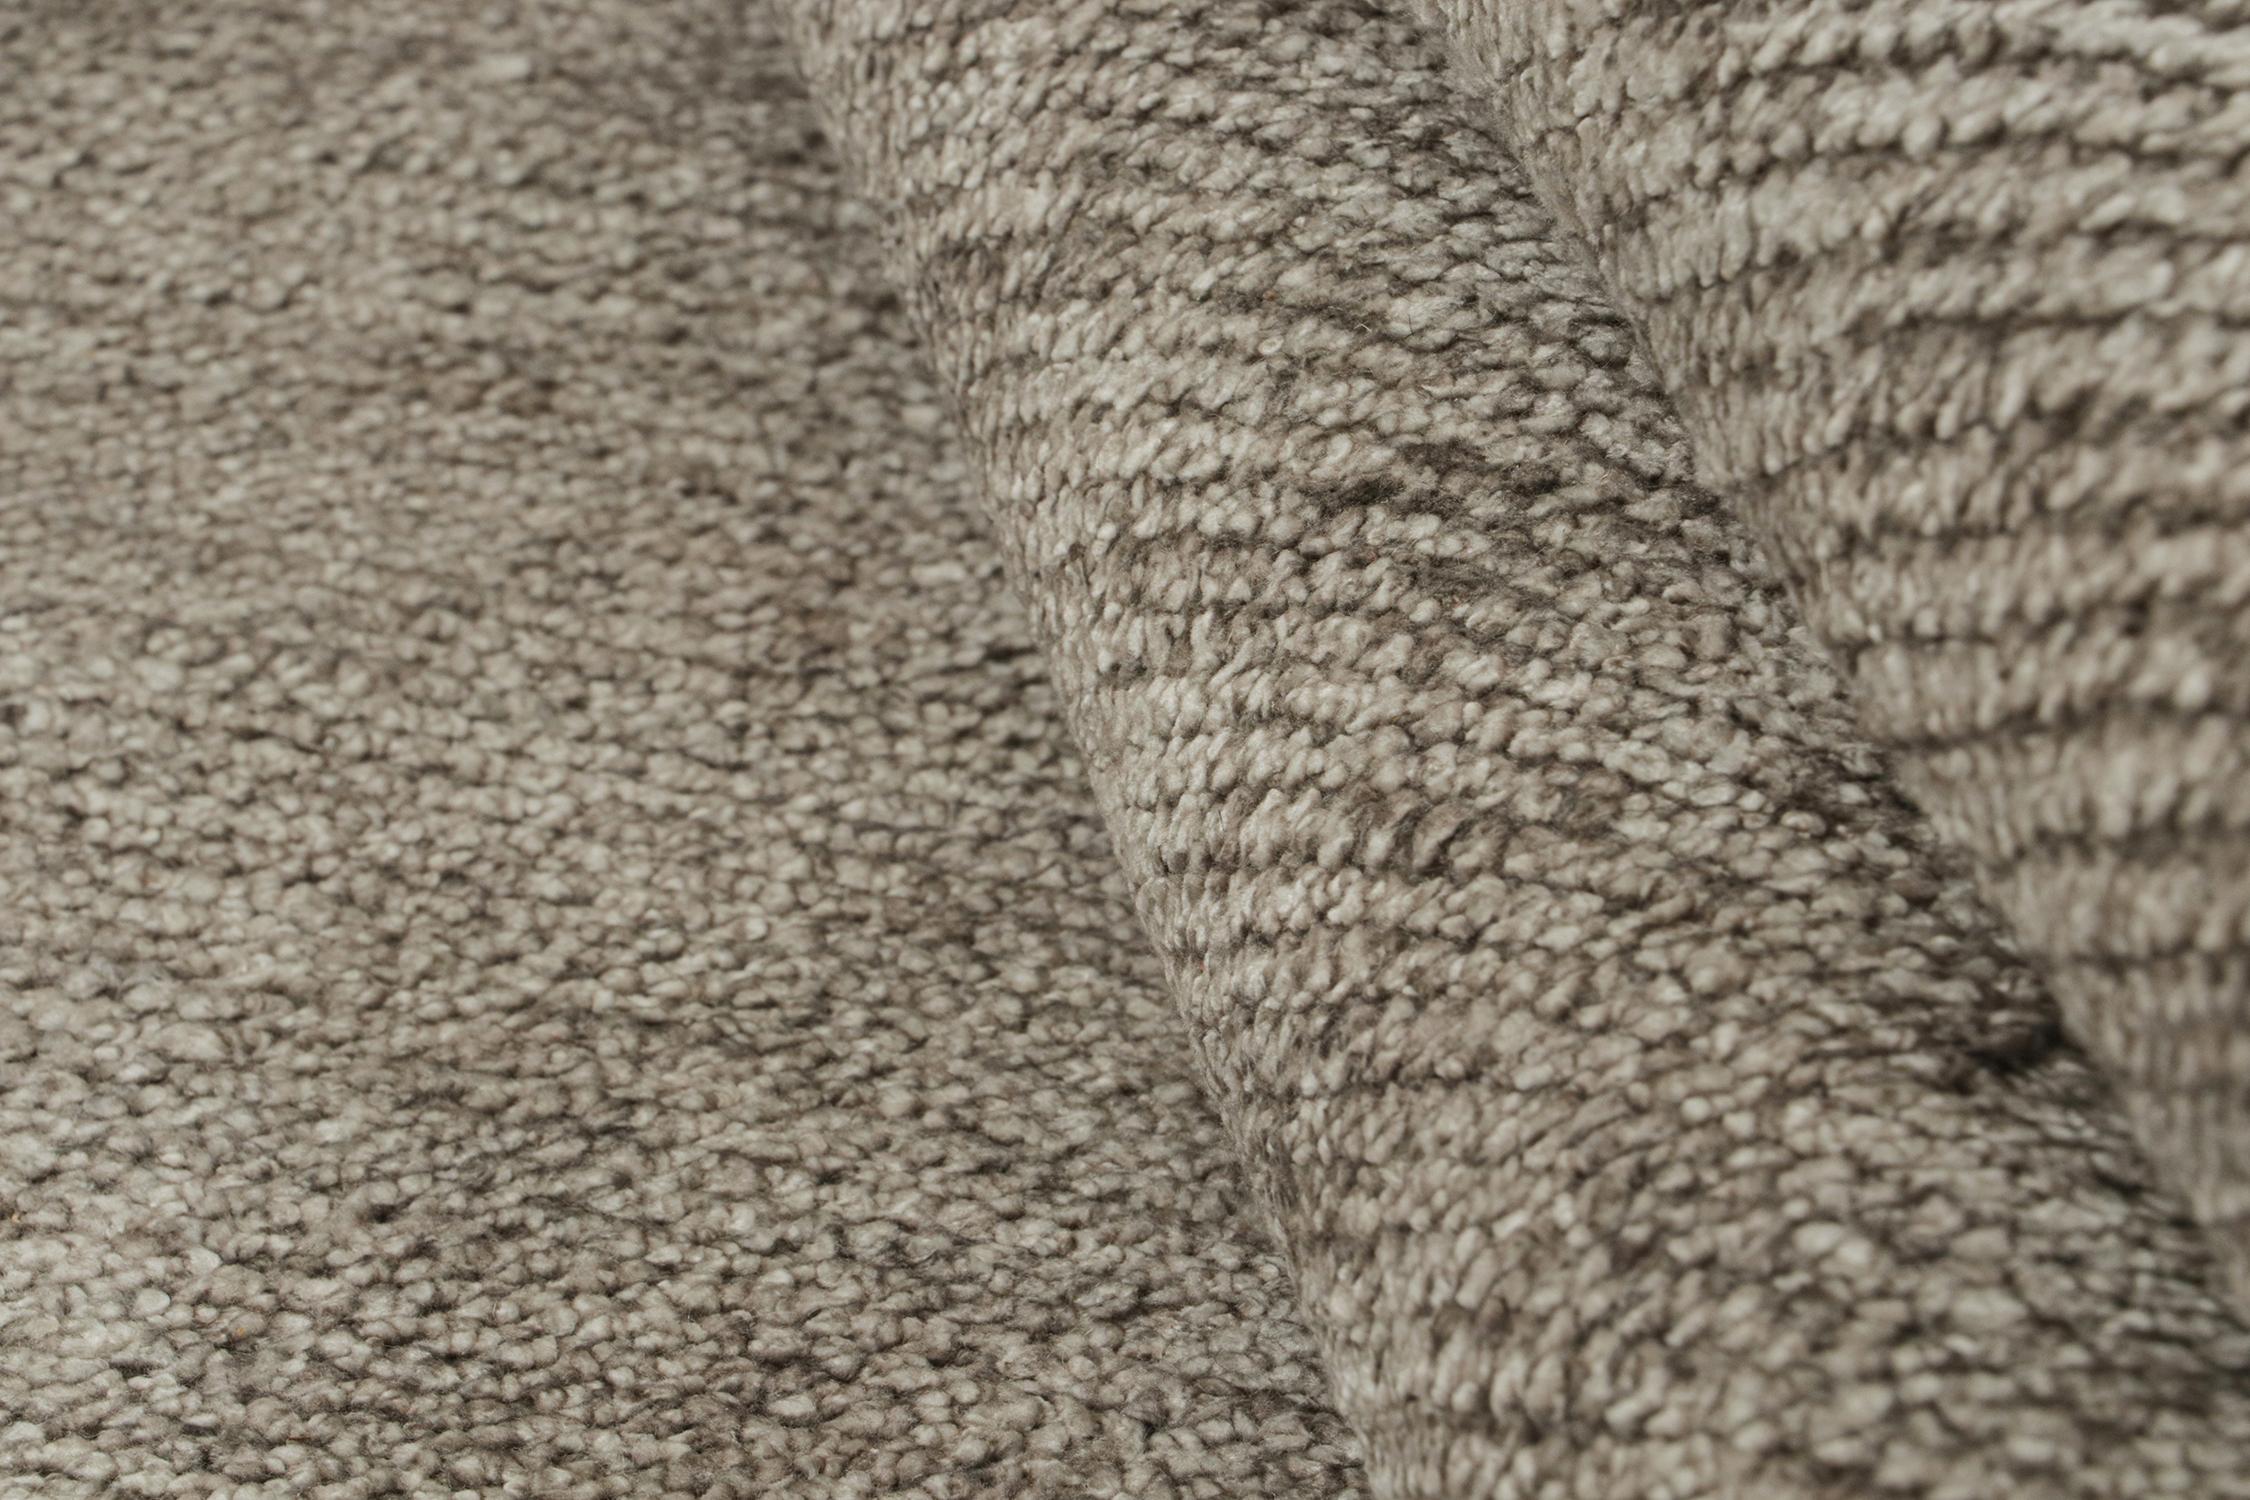 Rug & Kilim’s Modern rug in Solid Silver-Gray Tone-on-Tone Striae